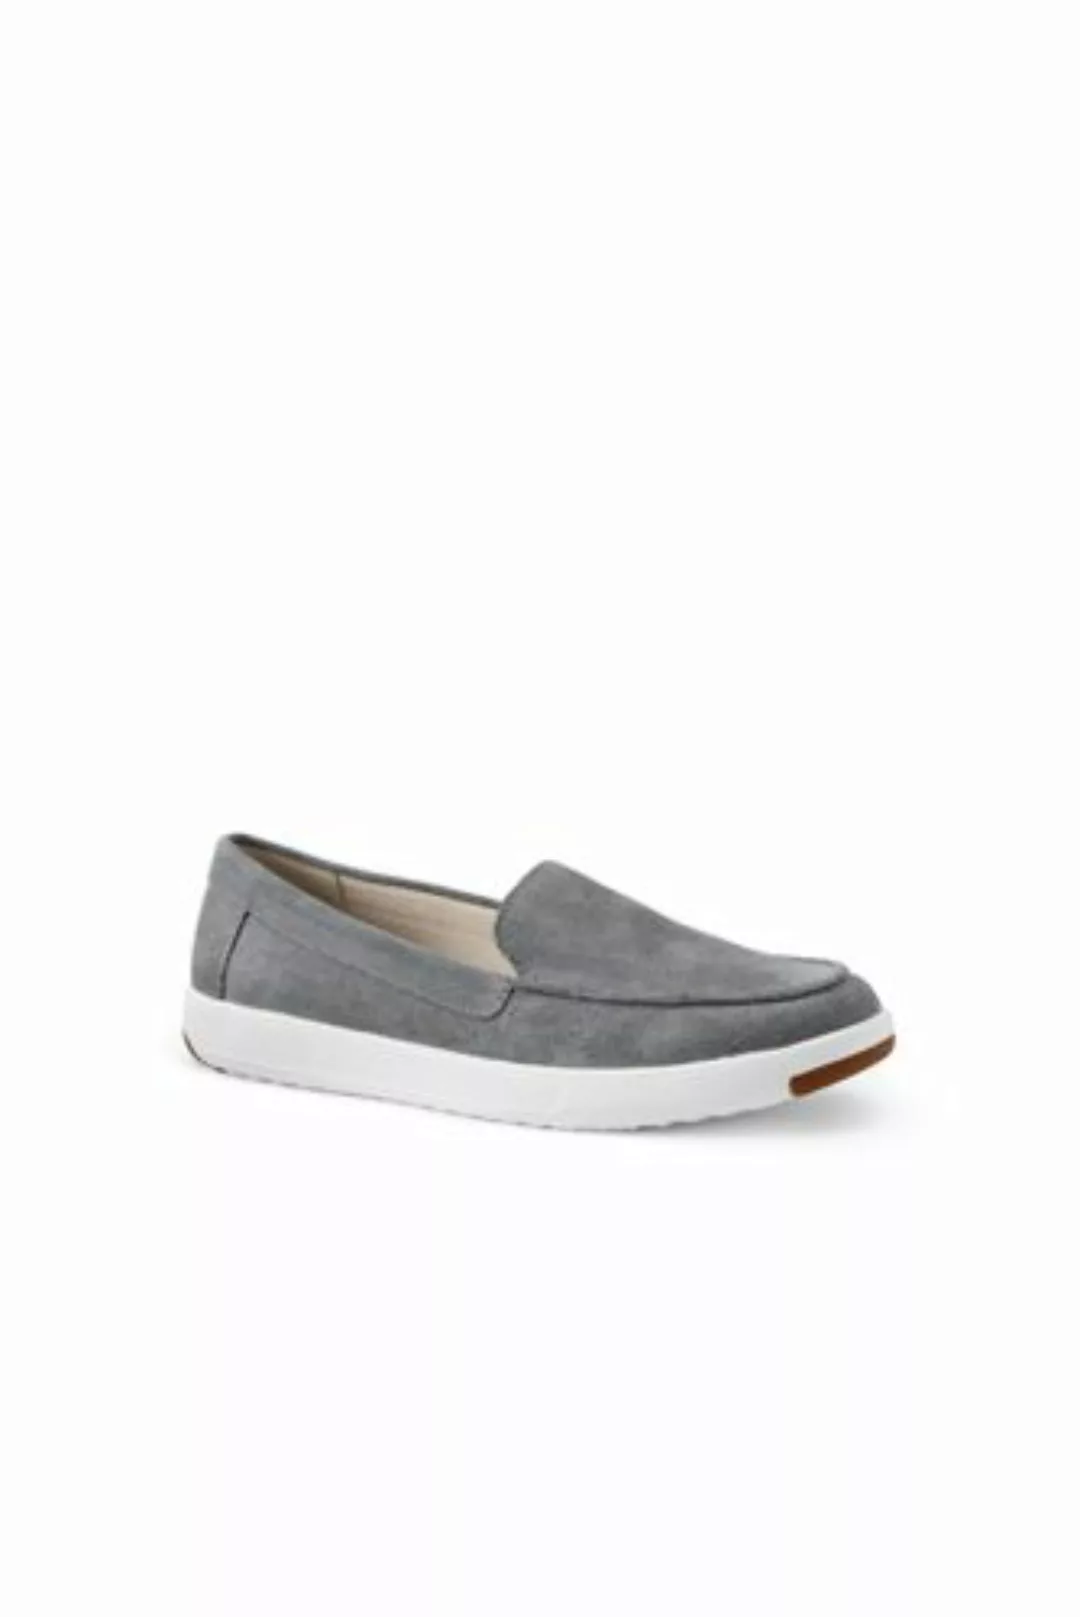 Federleichte Komfort-Loafer, Damen, Größe: 37.5 Normal, Grau, Rauleder, by günstig online kaufen